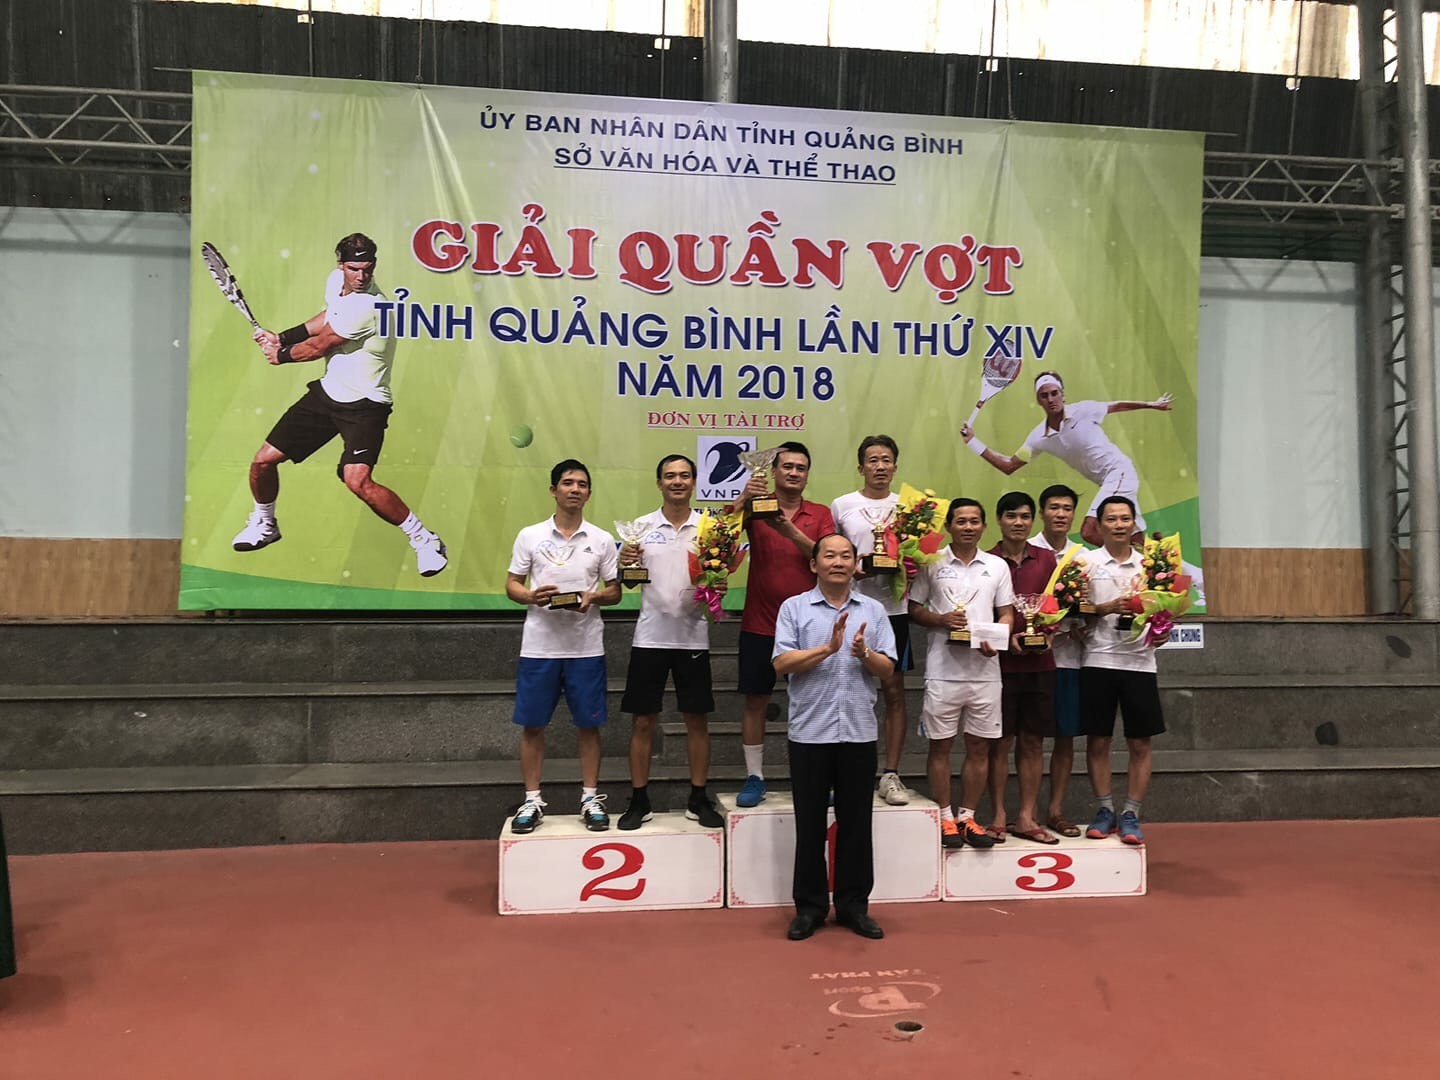 Giải quần vợt tỉnh Quảng Bình lần thứ 14, năm 2018 thành công tốt đẹp